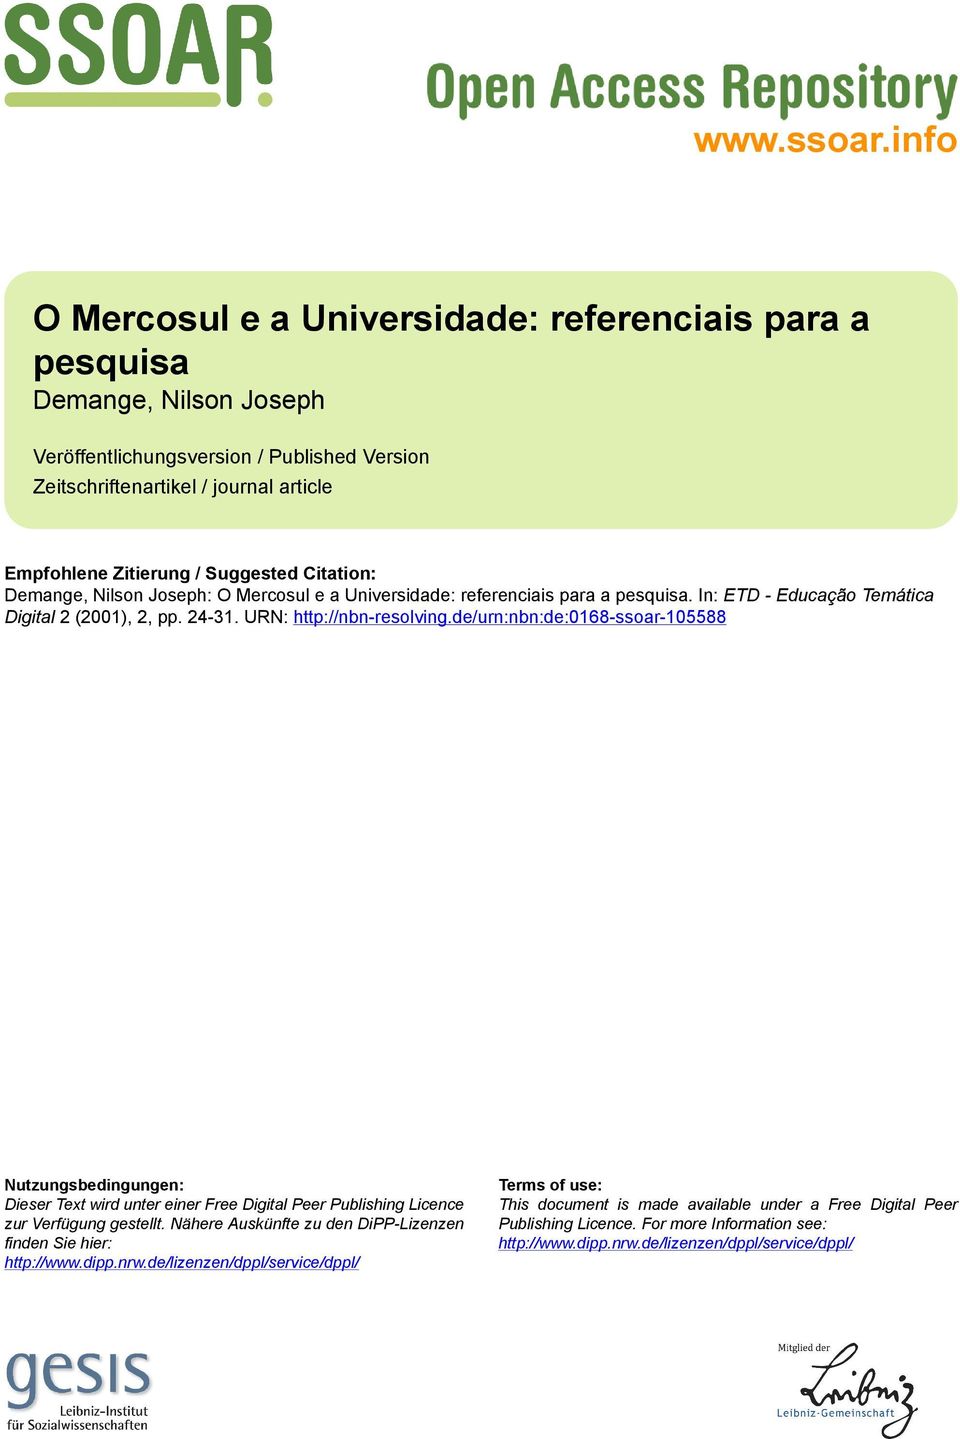 Suggested Citation: Demange, Nilson Joseph: O Mercosul e a Universidade: referenciais para a pesquisa. In: ETD - Educação Temática Digital 2 (2001), 2, pp. 24-31. URN: http://nbn-resolving.